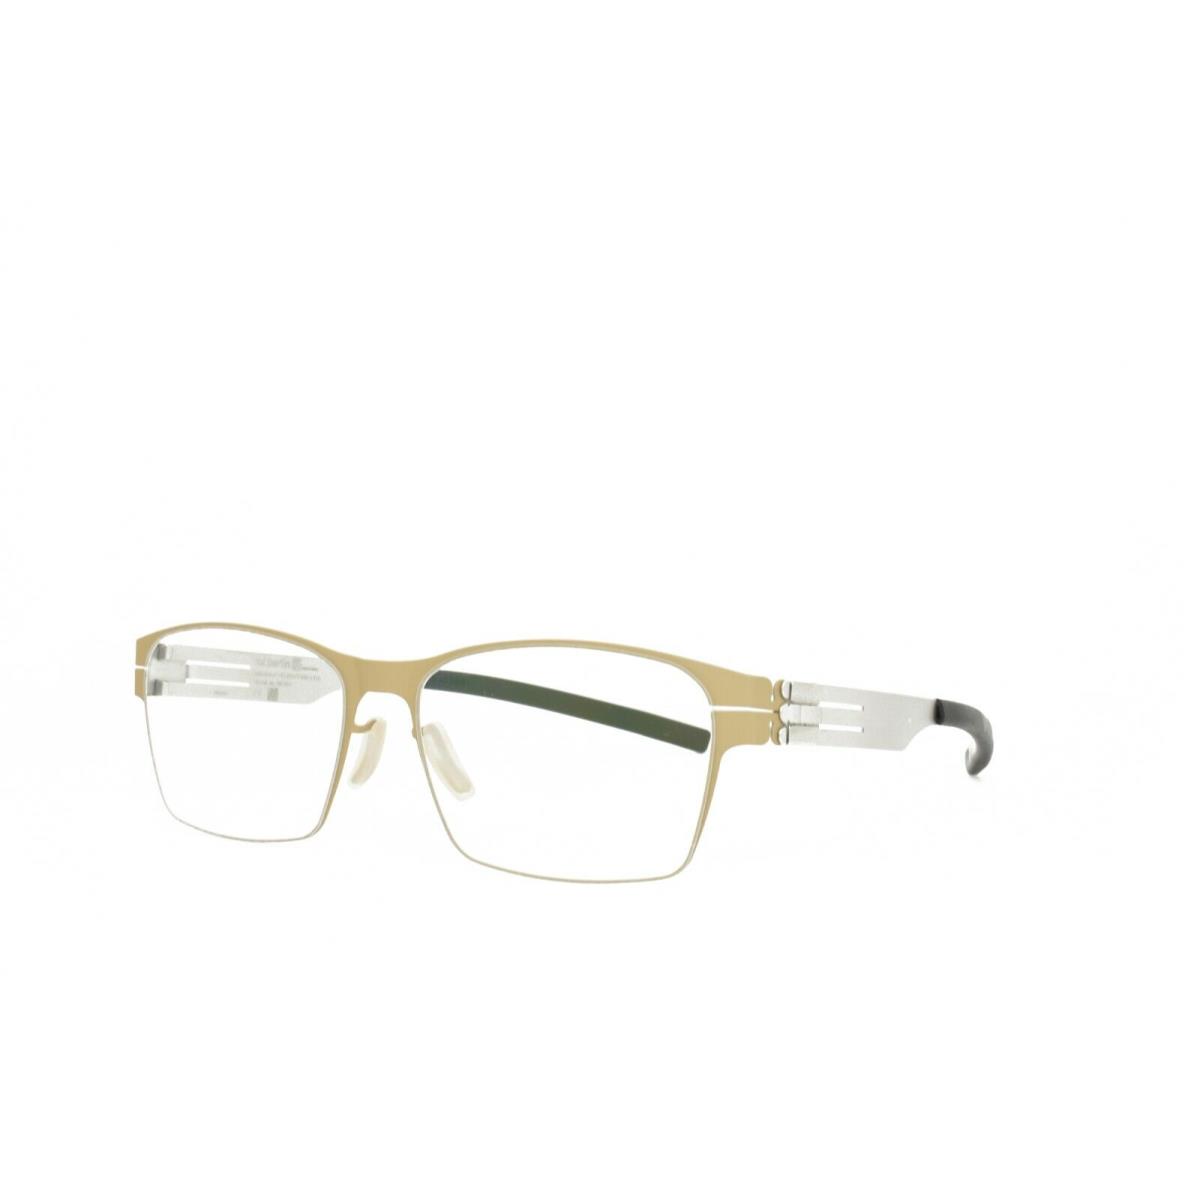 iC Berlin Eyeglasses Luke J.y. Desert Pearl 54-17-145